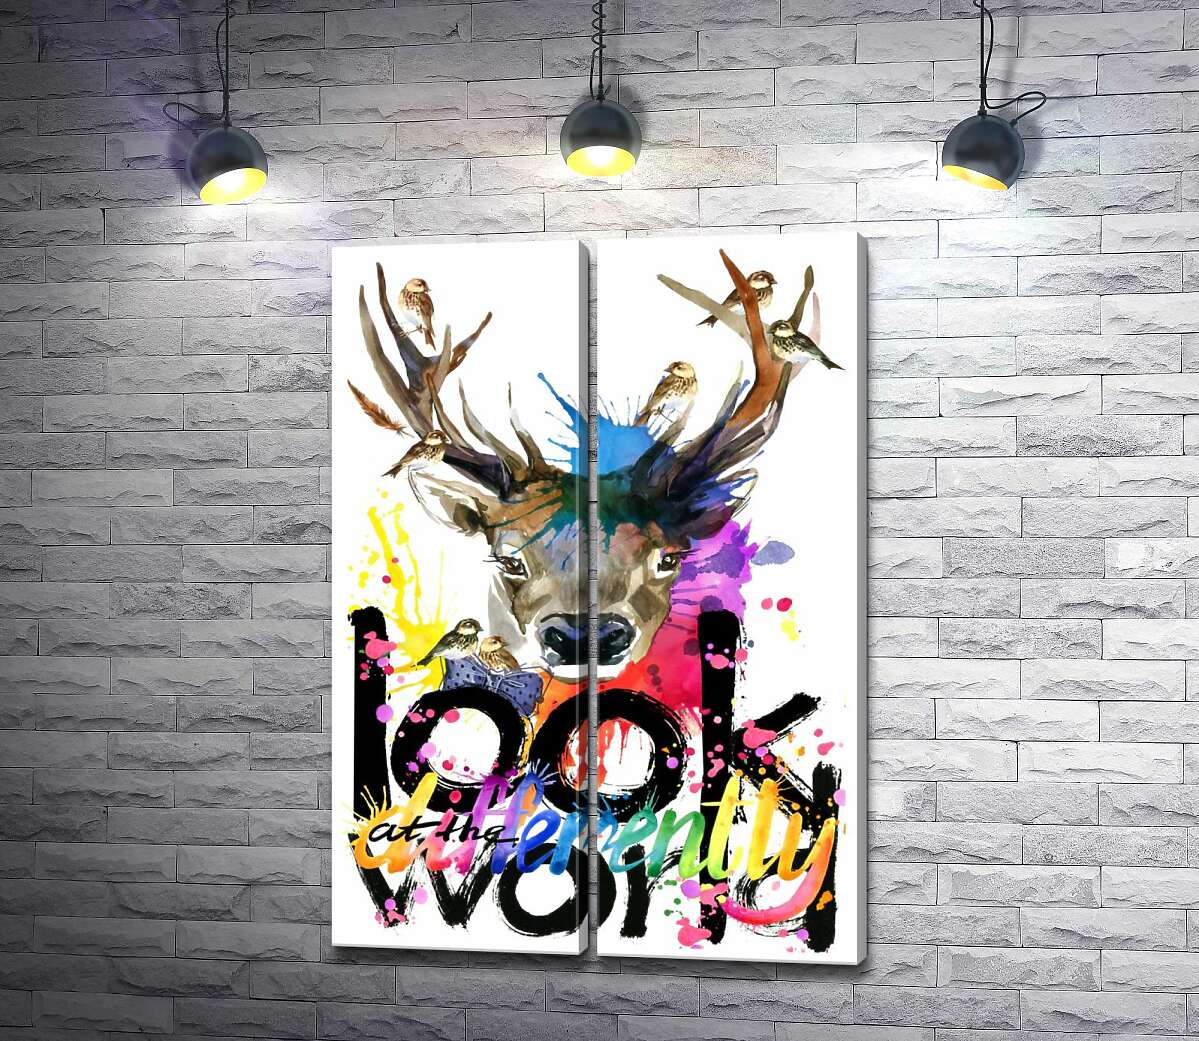 модульная картина Стайка воробьев окружила благородного оленя и цветную фразу "look at the world differently"